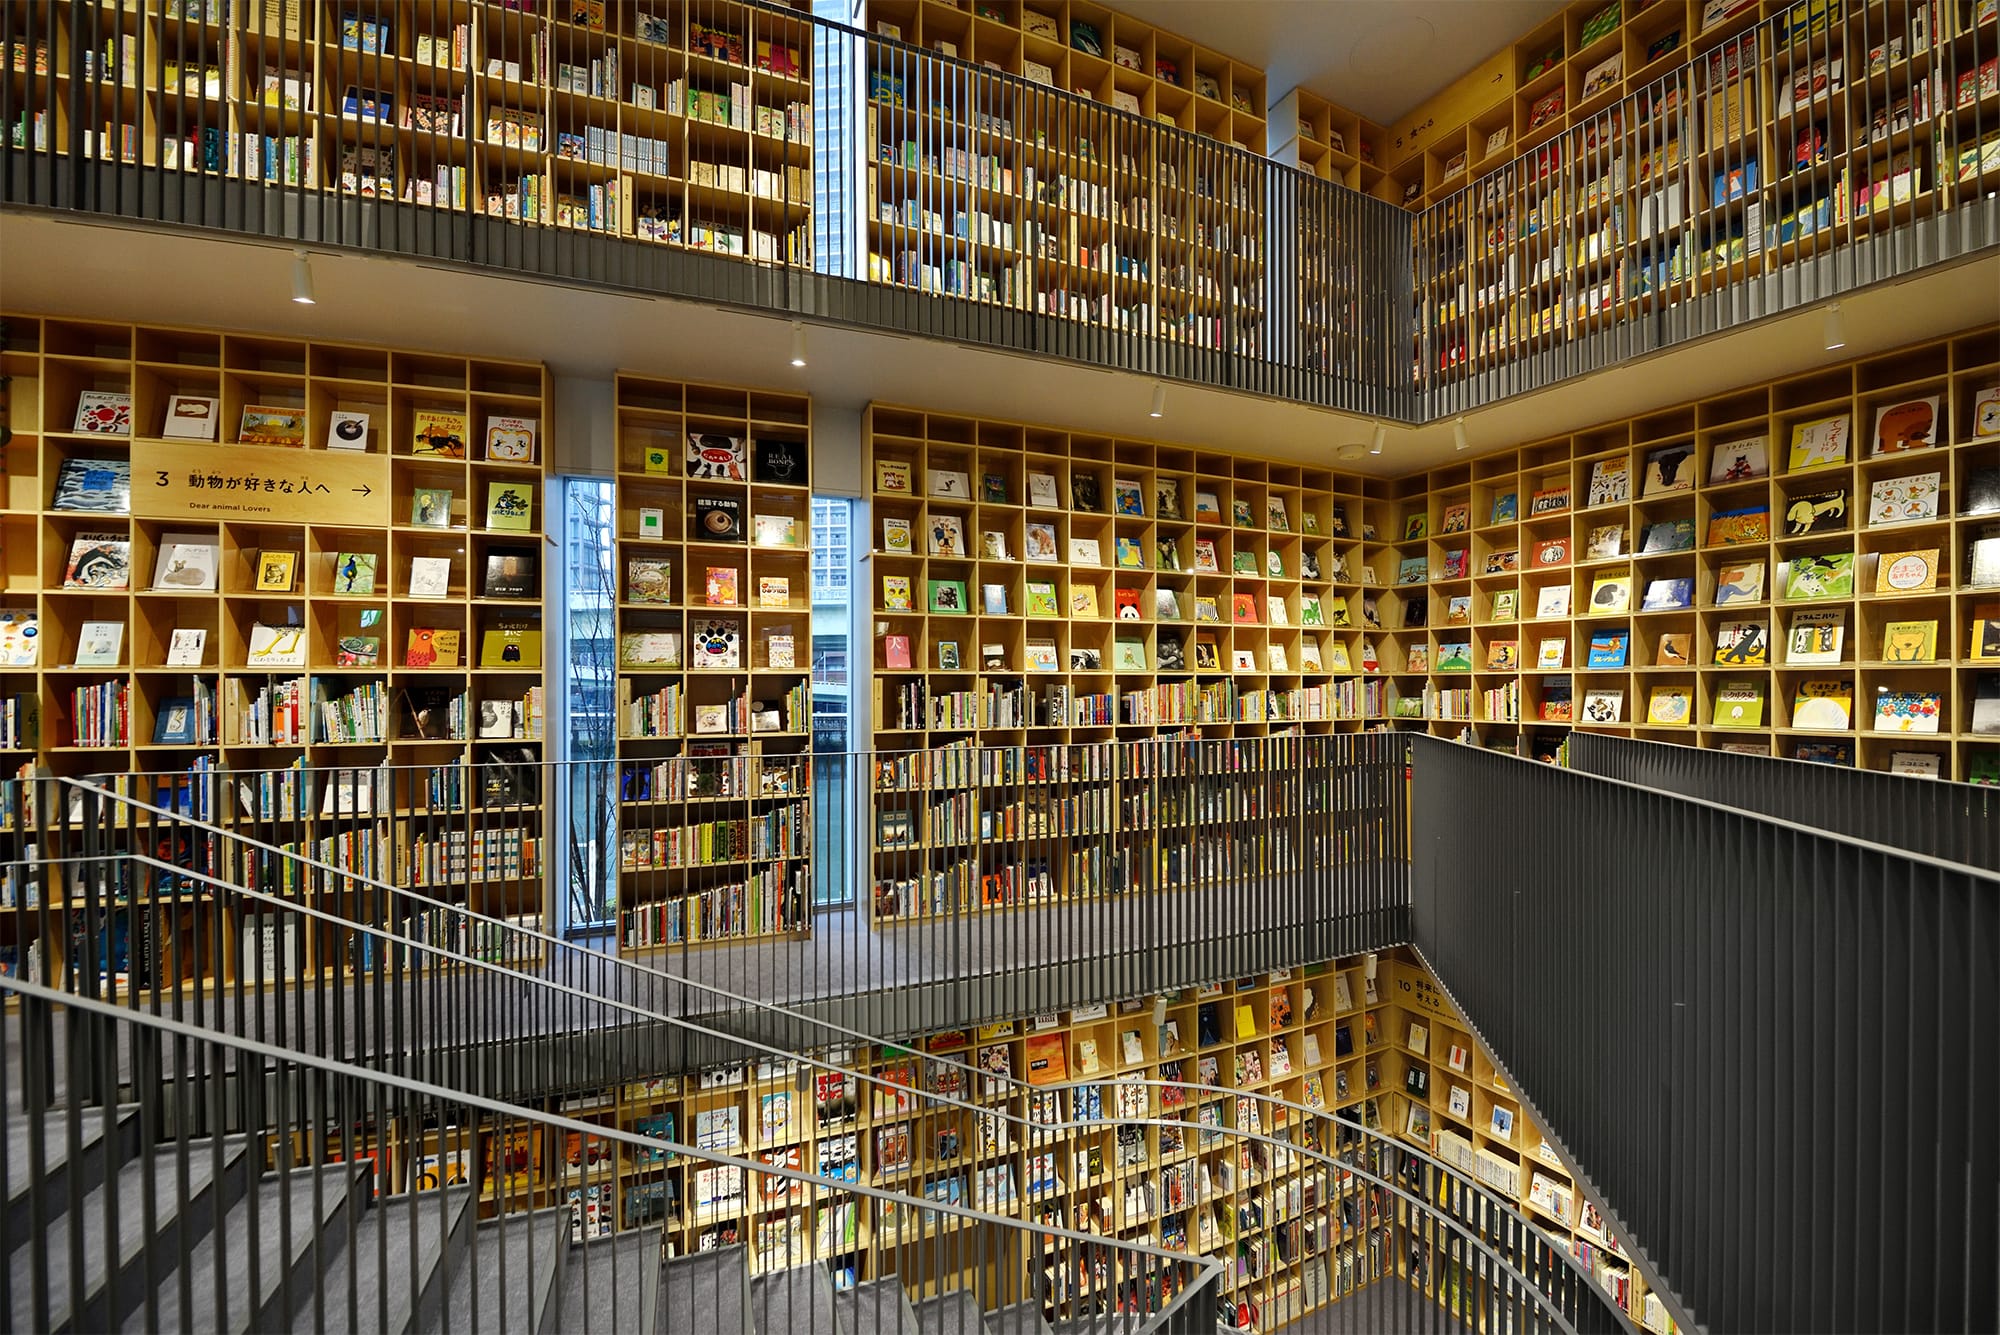 ３フロア分の壁がすべて本棚になっている、まさに”本の森”のようだ。